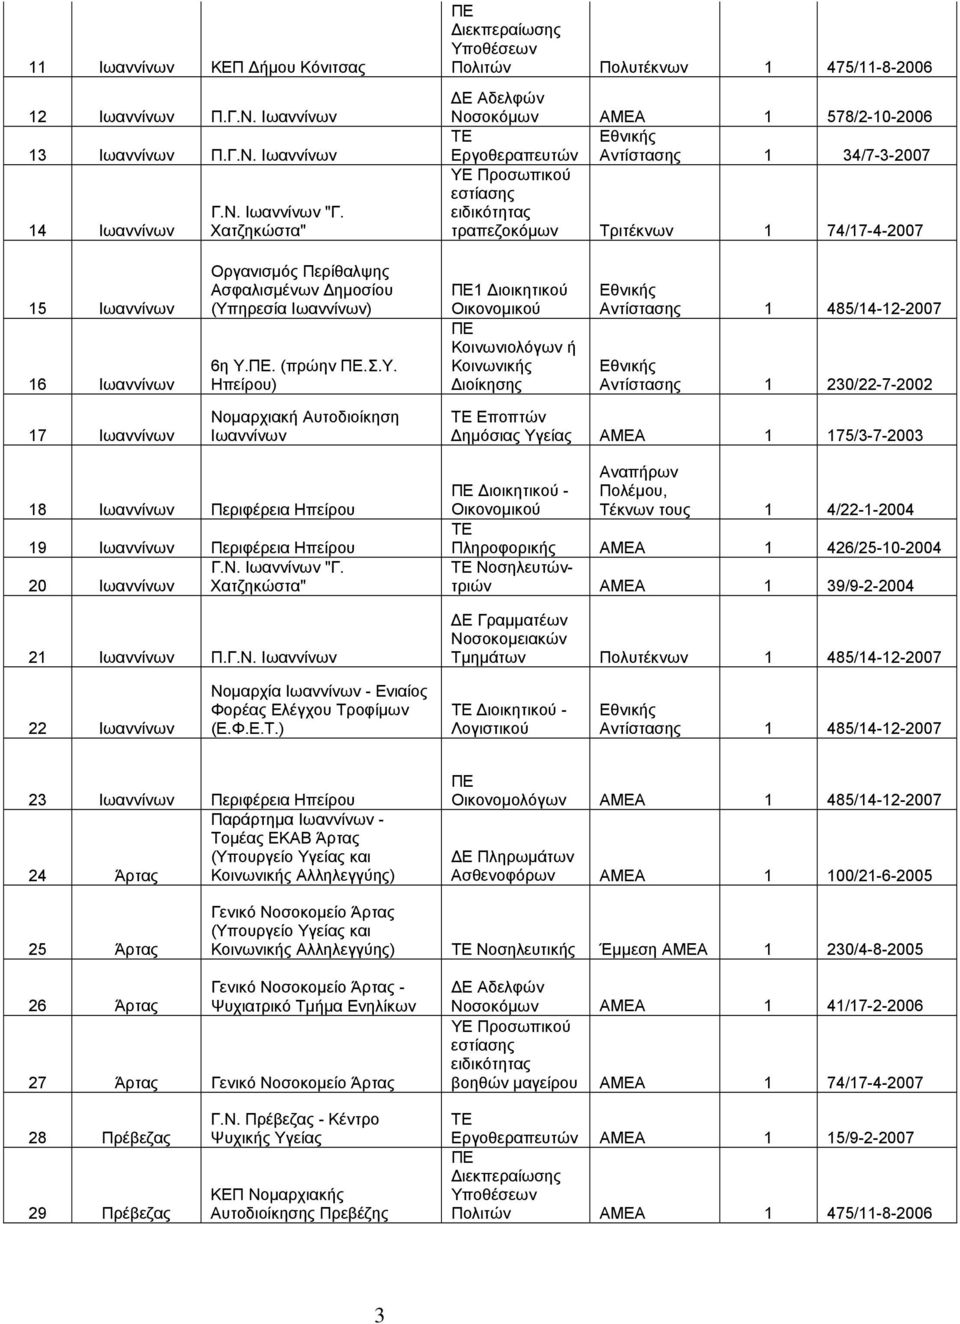 Ιωαννίνων 14 Ιωαννίνων Πολιτών Πολυτέκνων 1 475/11-8-2006 Νοσοκόμων ΑΜΕΑ 1 578/2-10-2006 Εργοθεραπευτών Αντίστασης 1 34/7-3-2007 ΥΕ Προσωπικού εστίασης ειδικότητας τραπεζοκόμων Τριτέκνων 1